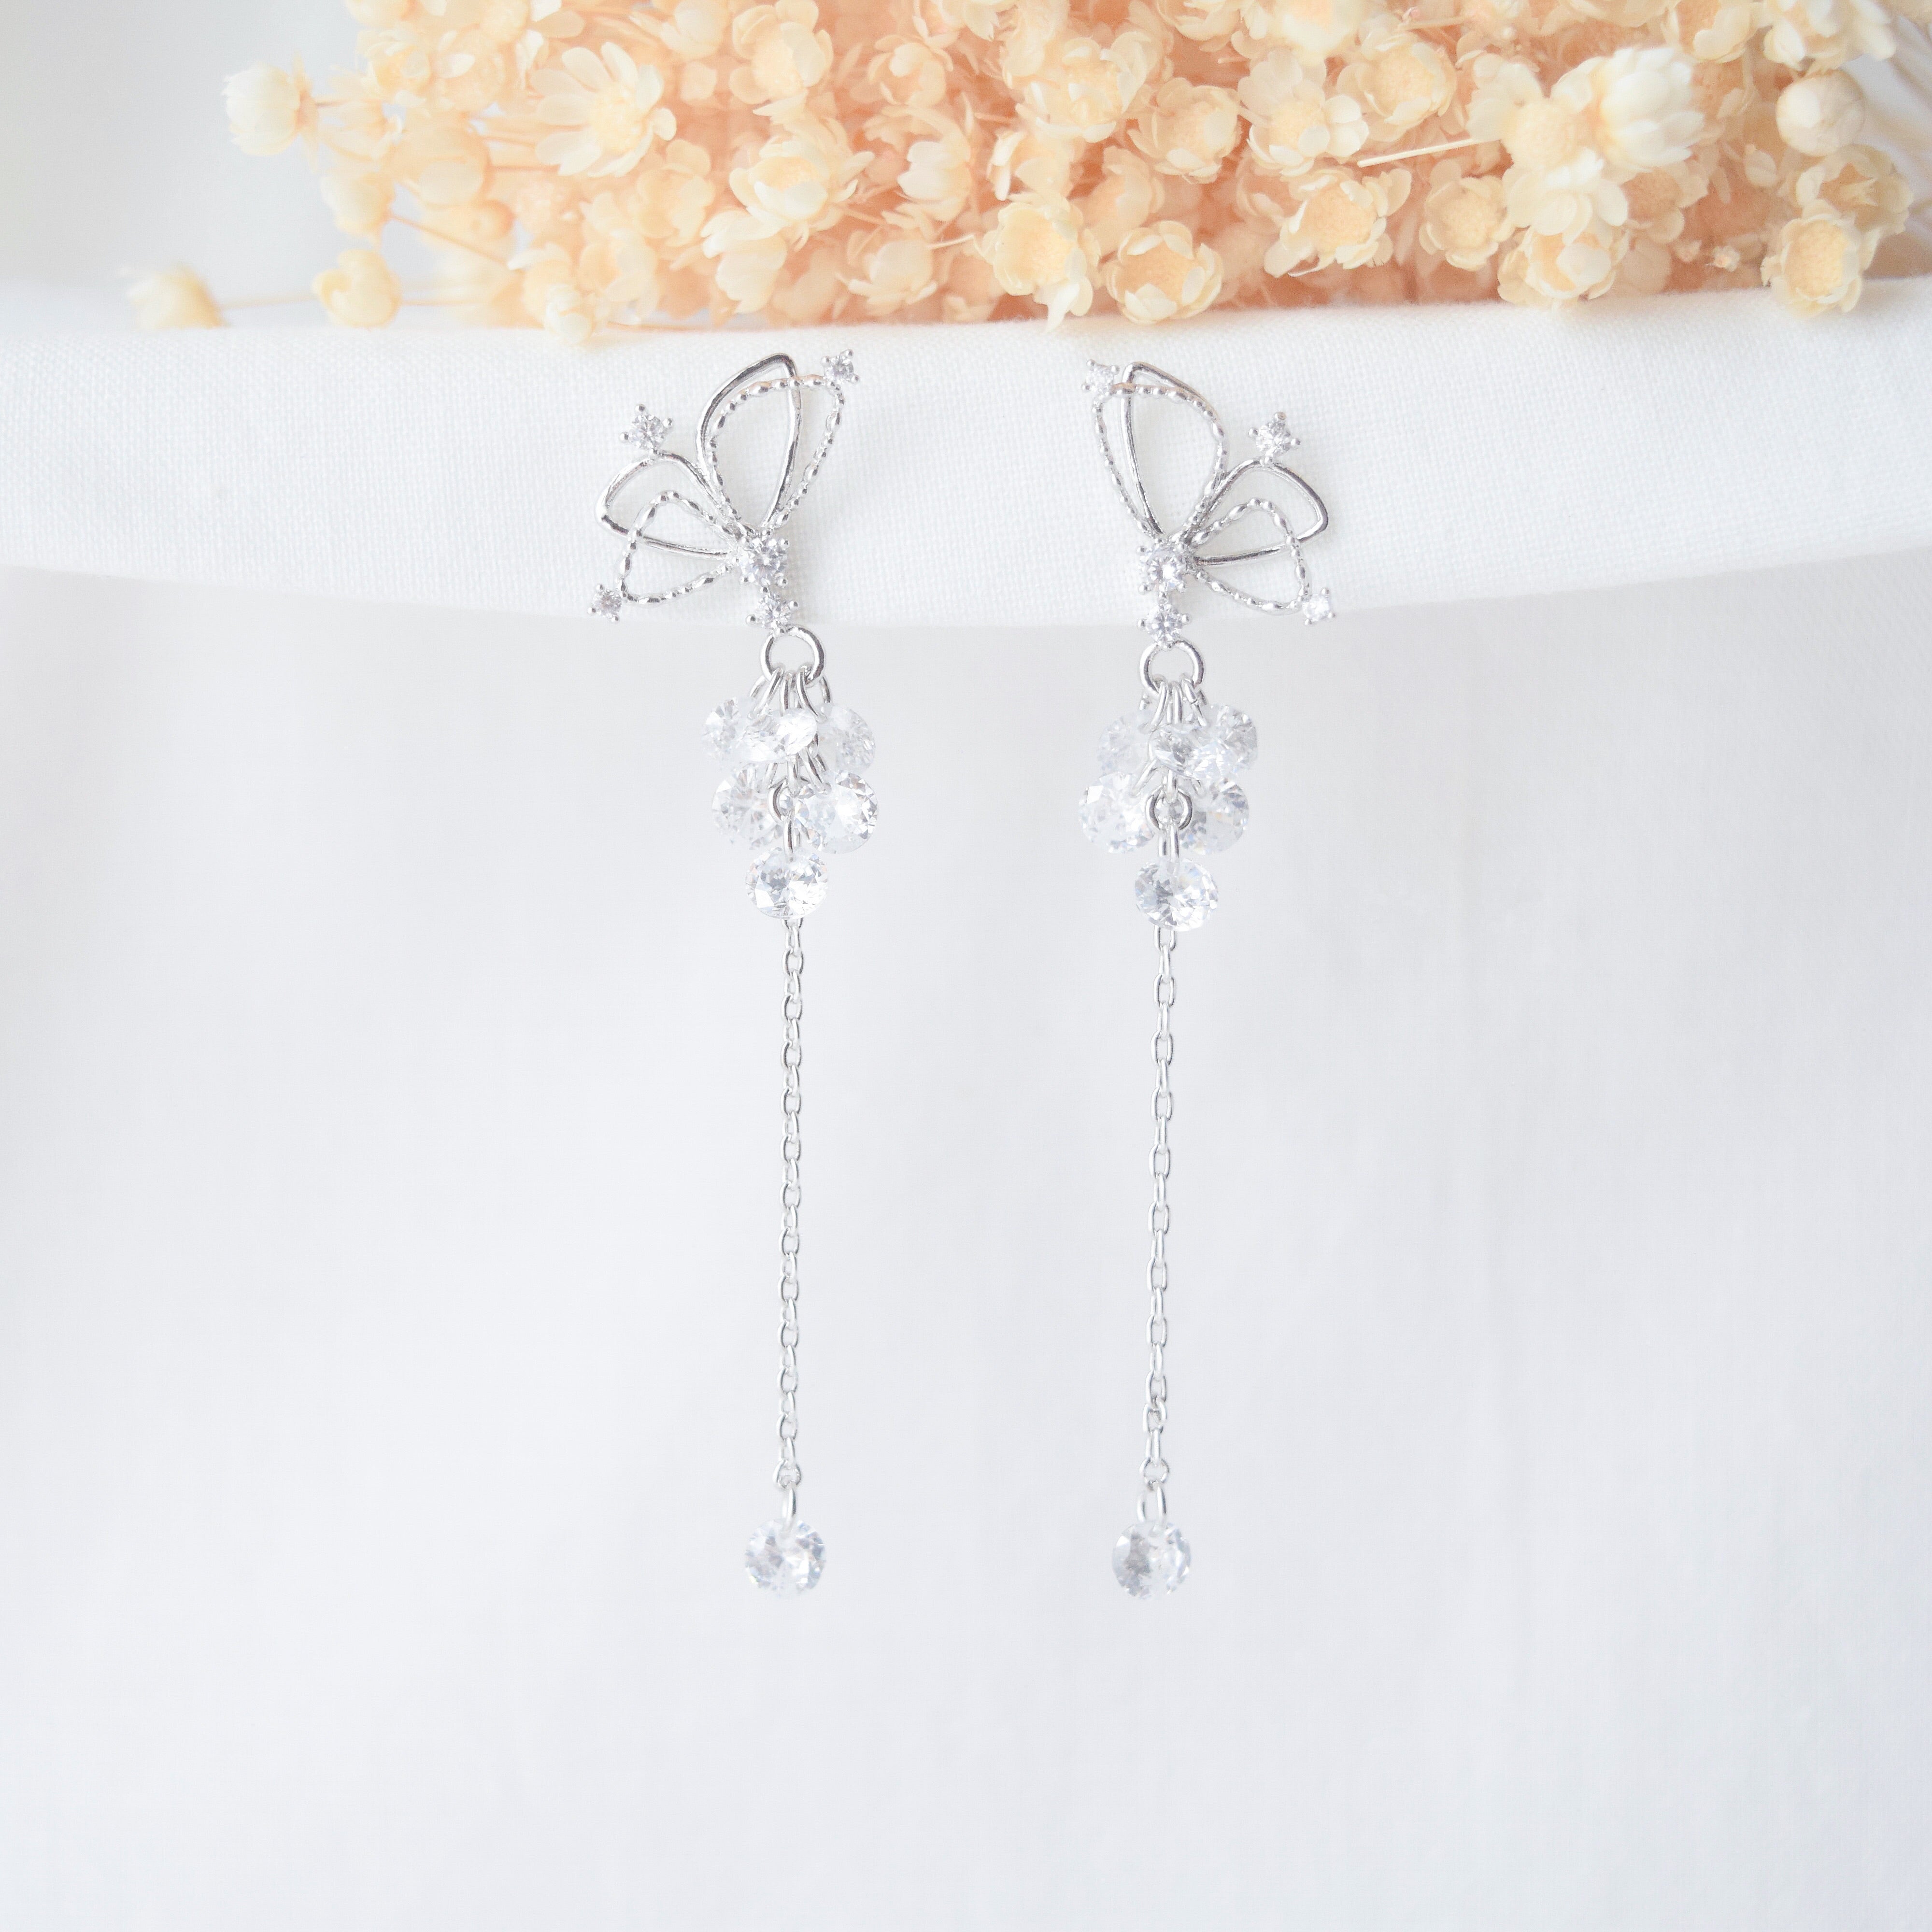 Silver Magic Butterfly Earrings | Made in Korea | Dainty Jewellery ...